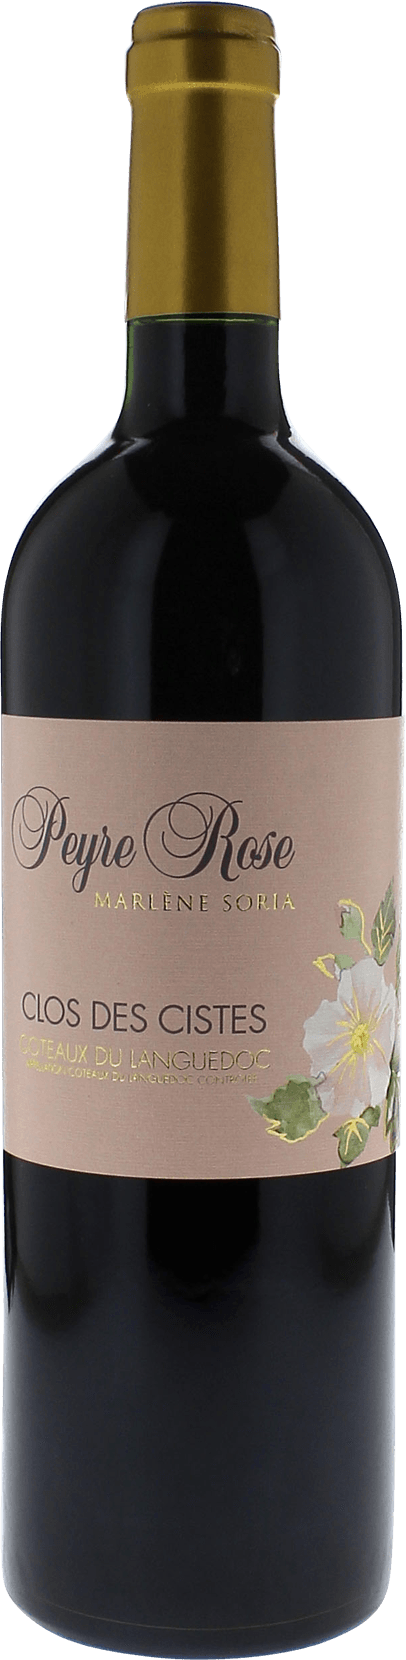 Peyre rose clos des cistes 2002  Coteaux du languedoc AOC, Languedoc rouge